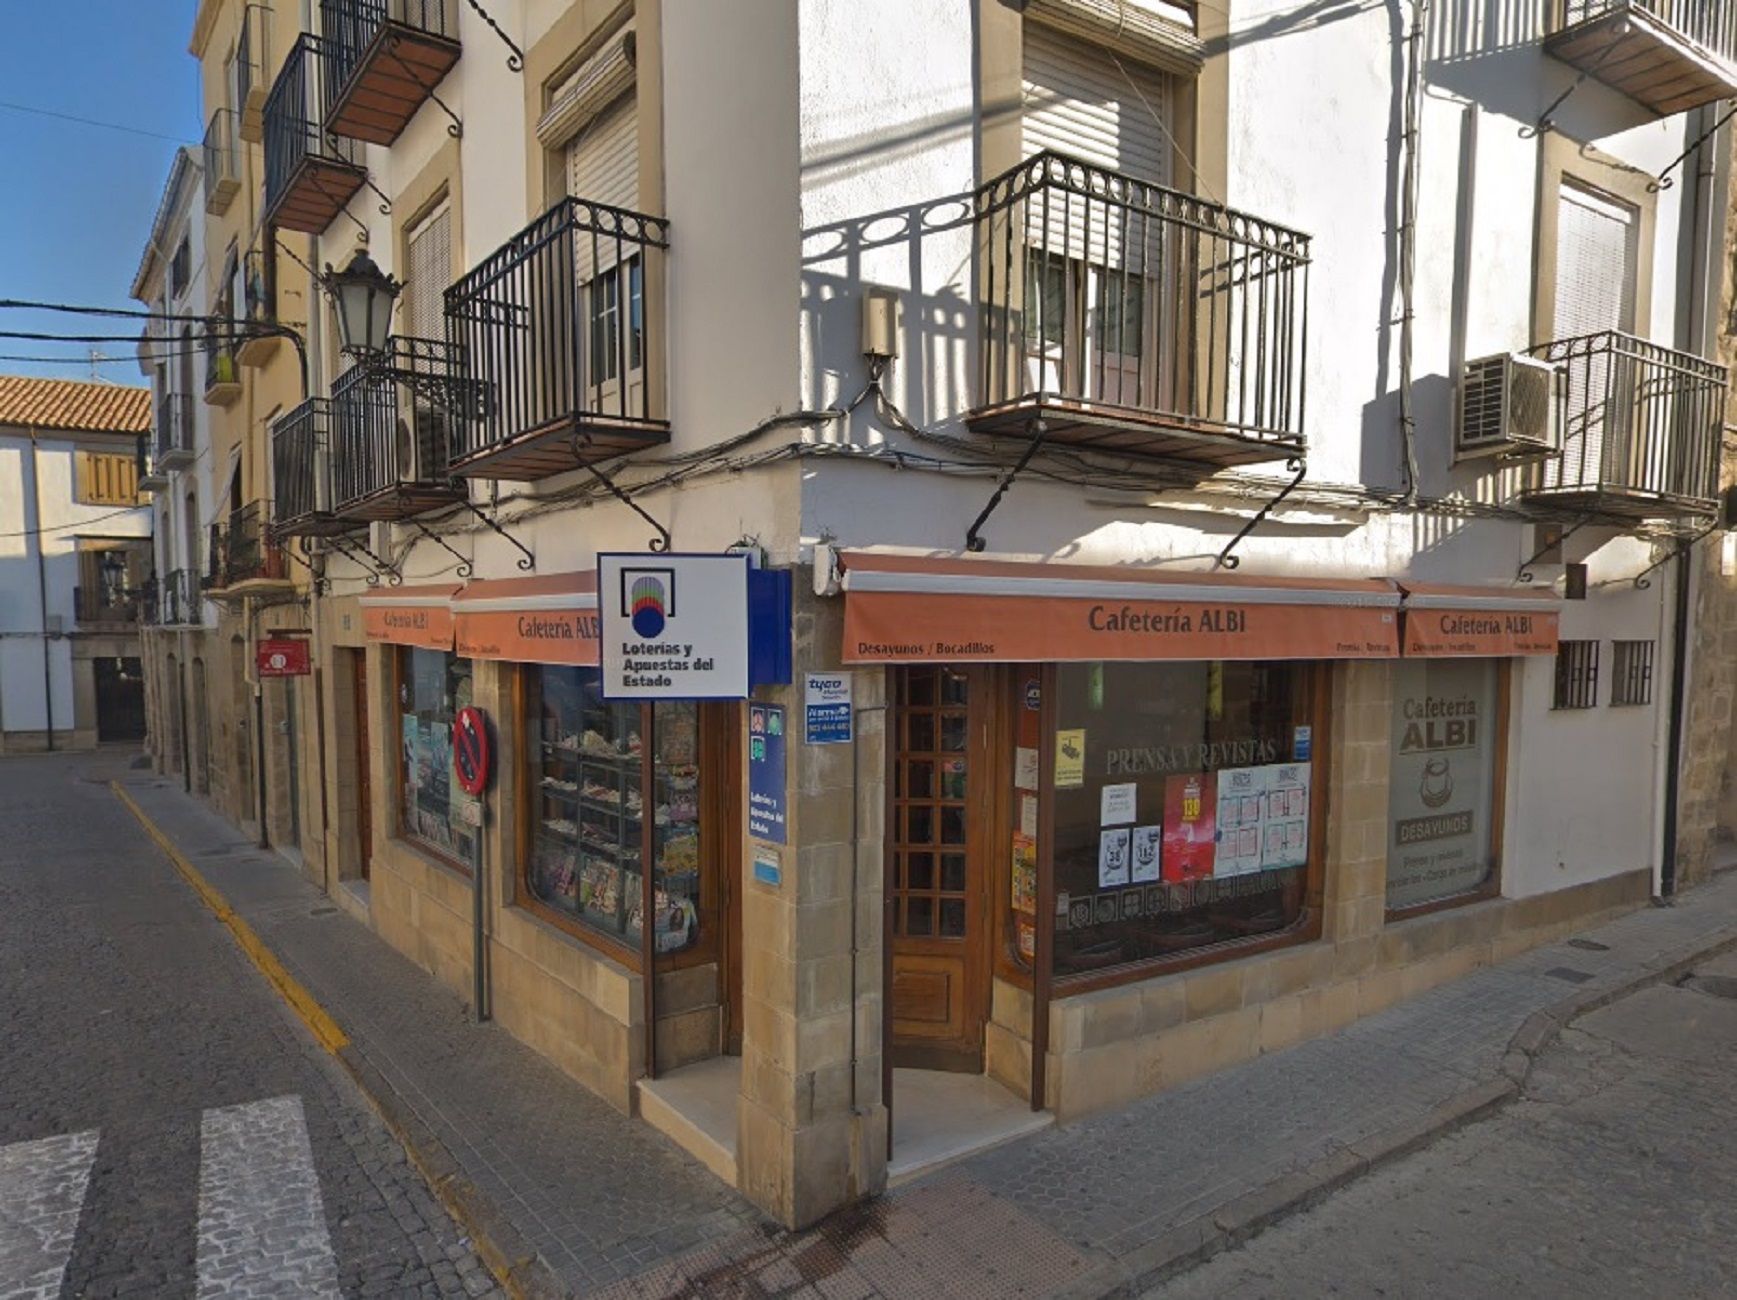 Cafetería Albi despacho receptor loterías 41.960 Baeza (Jaén) / Google Maps